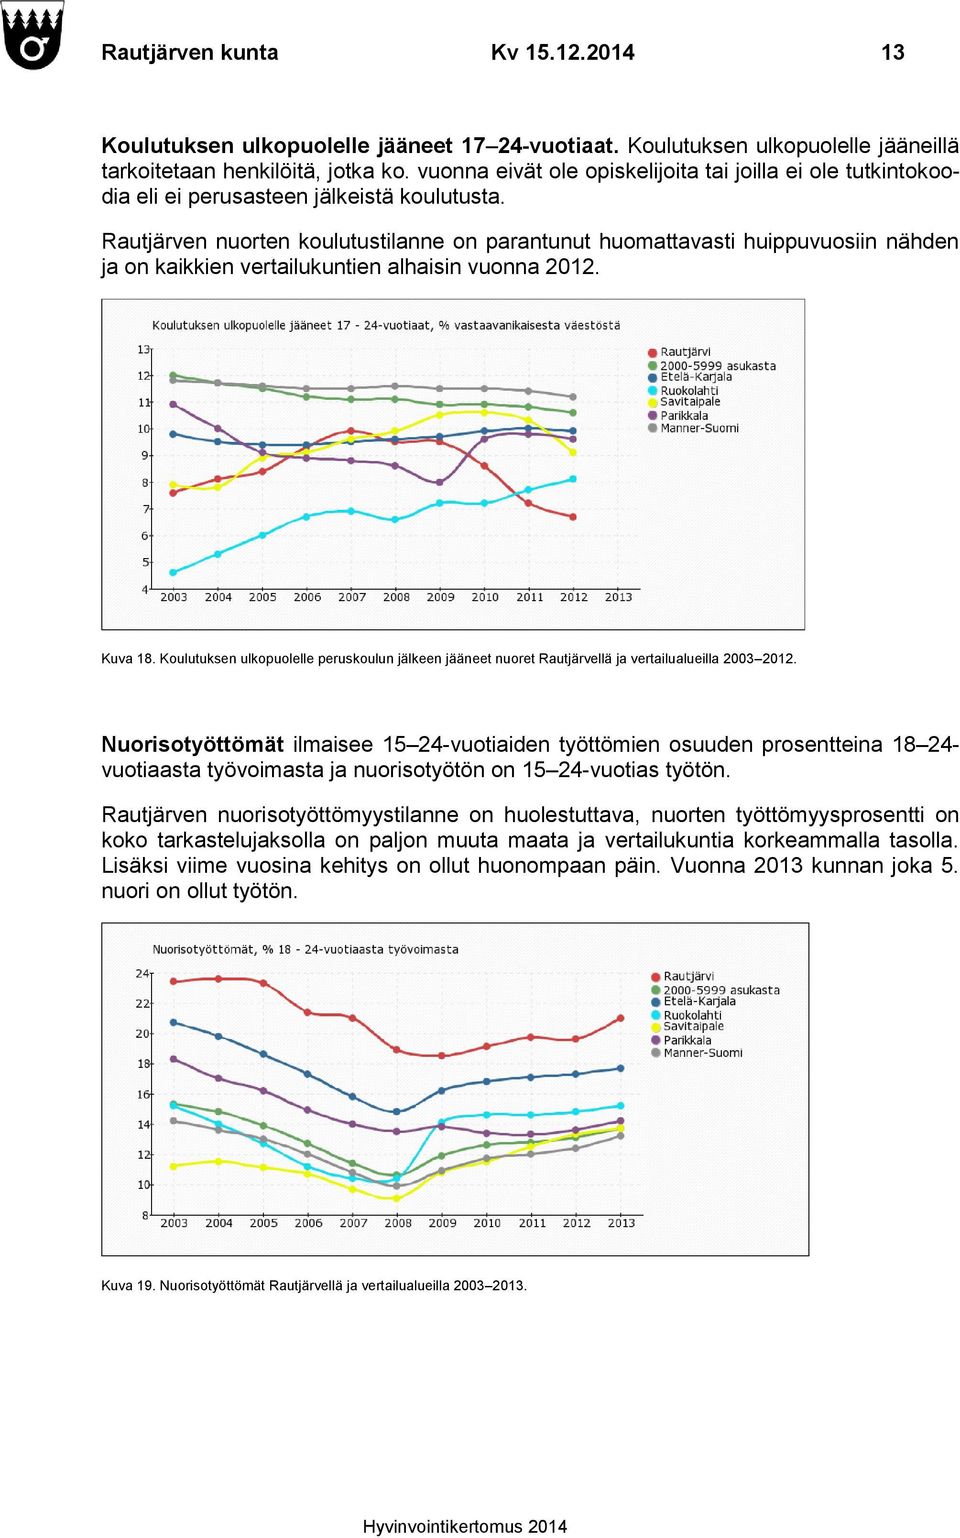 Rautjärven nuorten koulutustilanne on parantunut huomattavasti huippuvuosiin nähden ja on kaikkien vertailukuntien alhaisin vuonna 2012. Kuva 18.